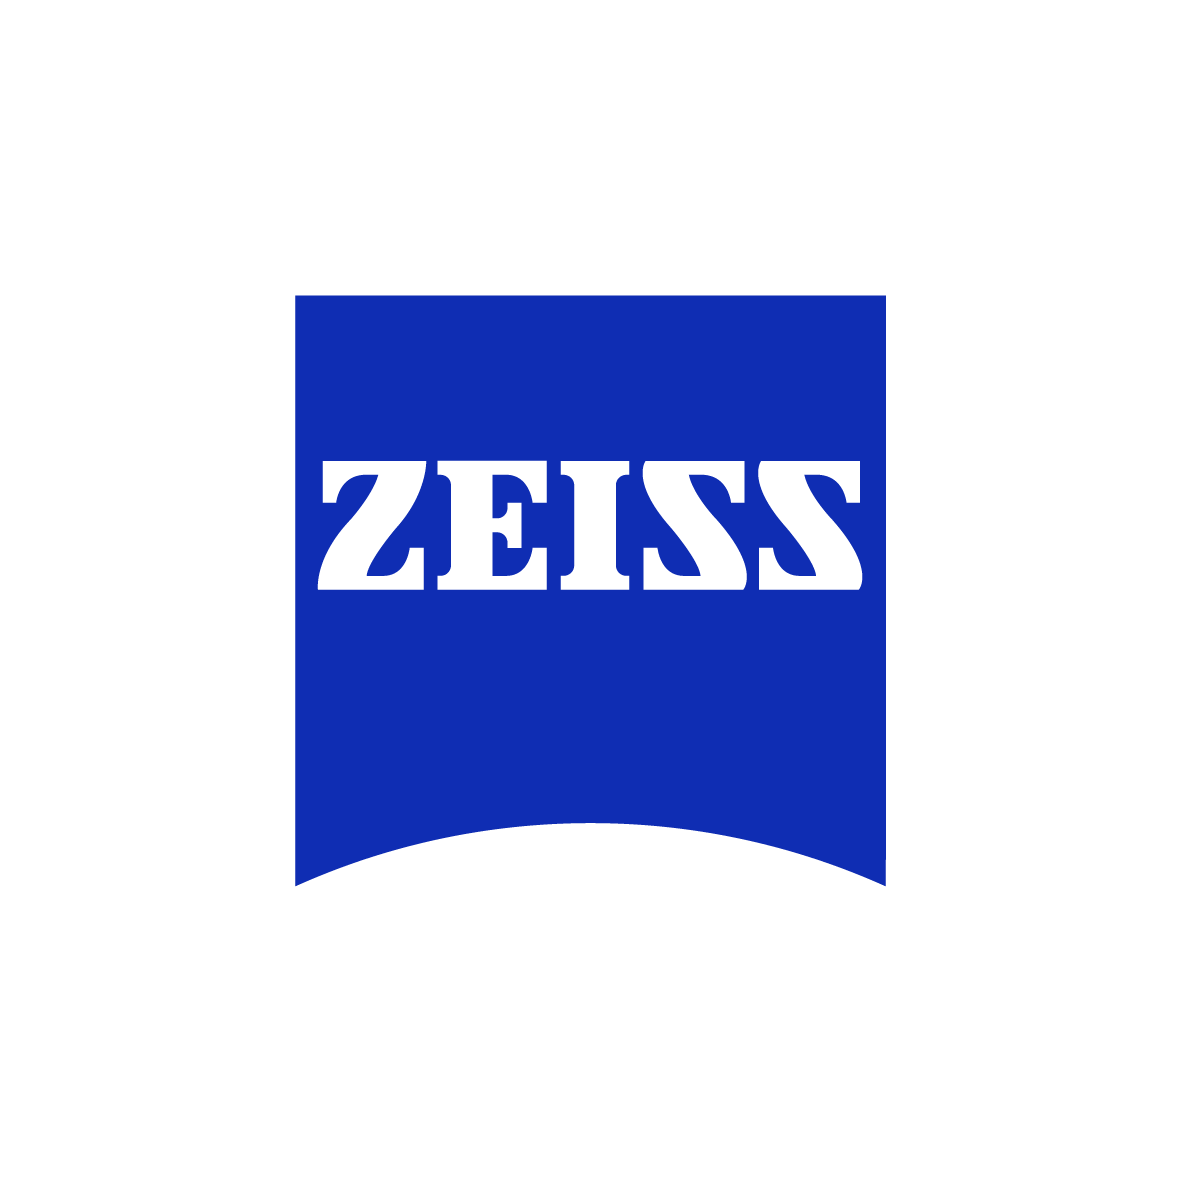 zeiss-logo-rgb